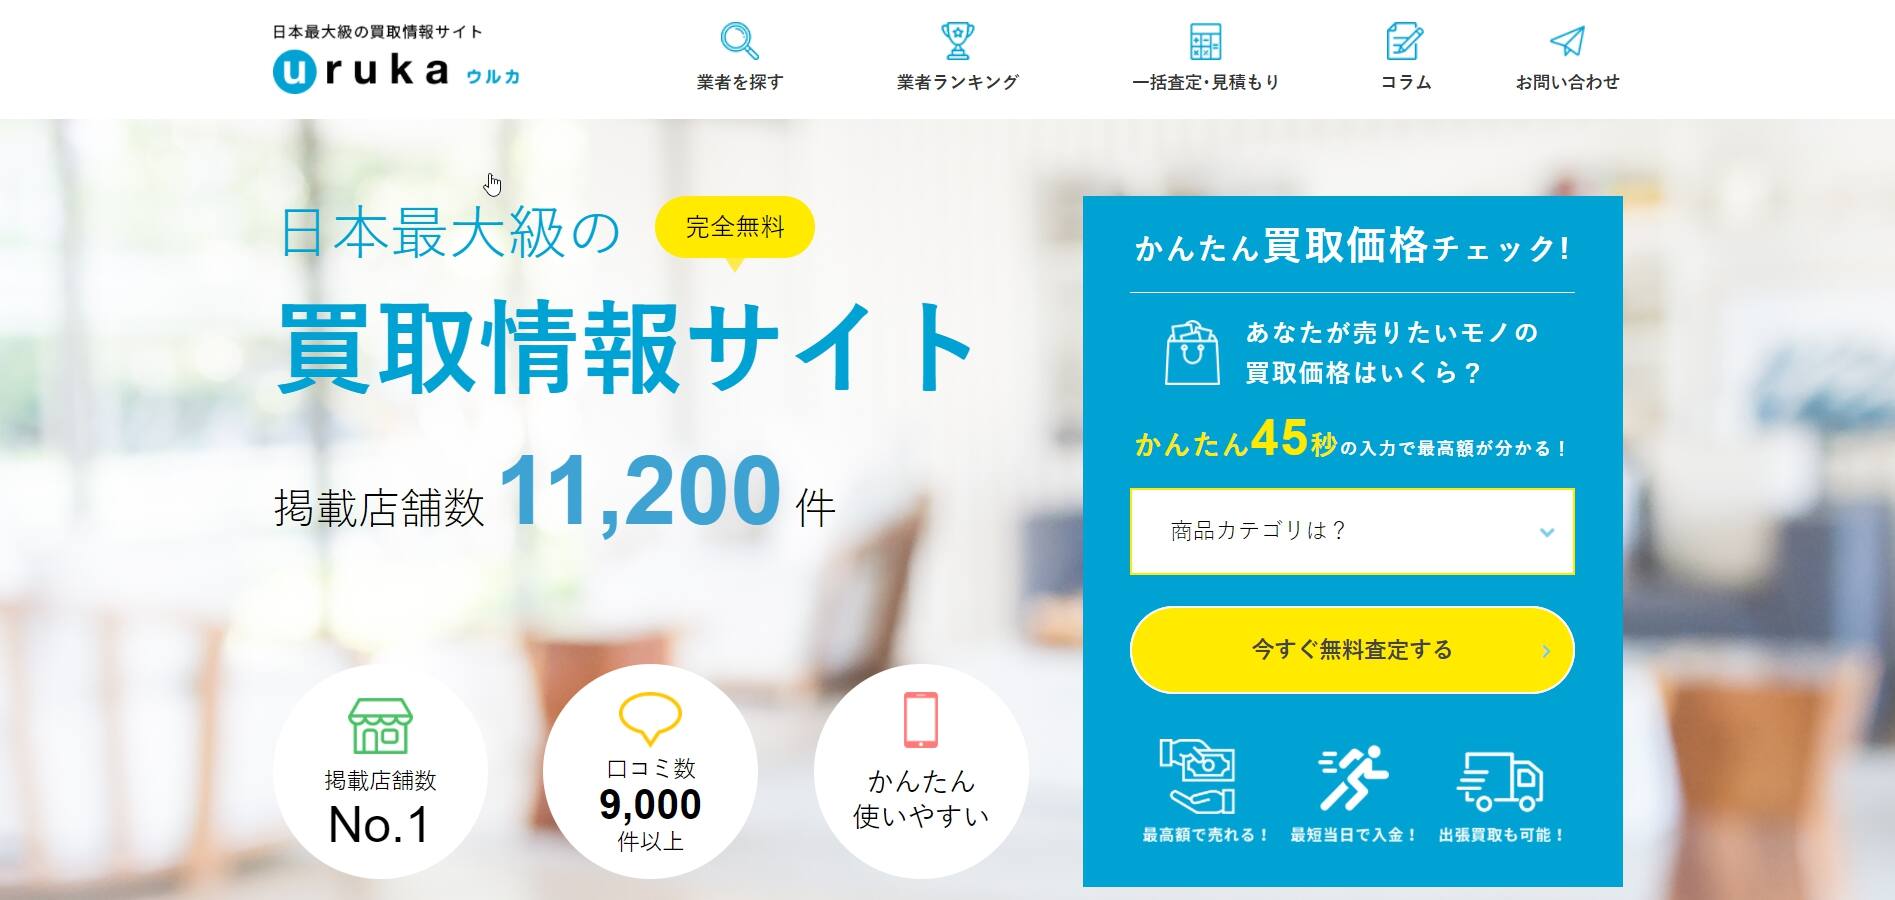 日本最大級の買取サイト「ウルカ」